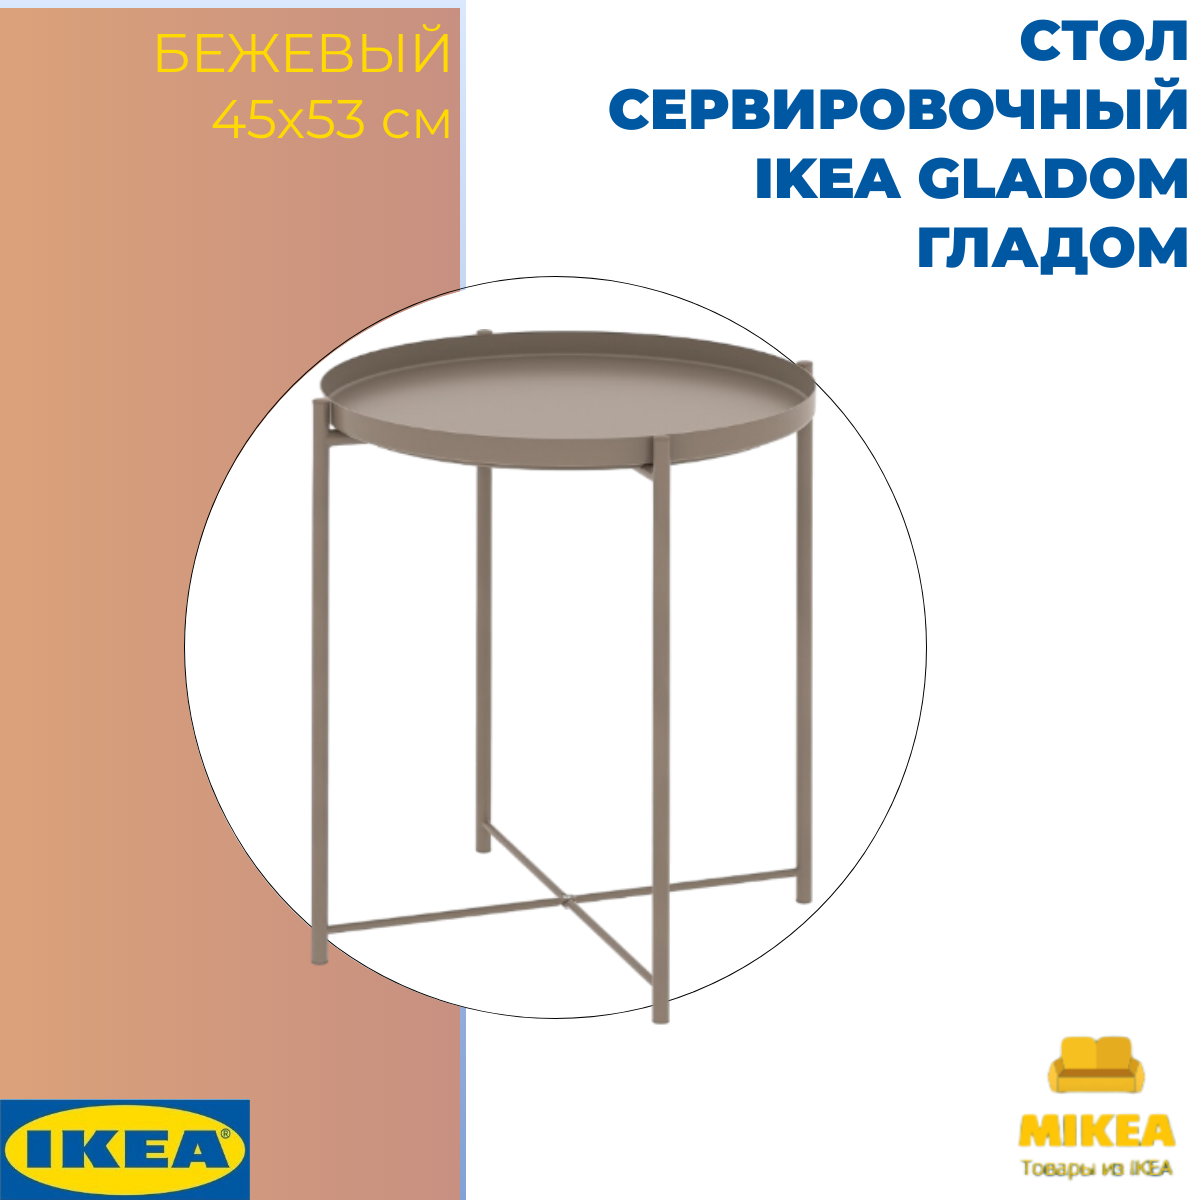 Стол сервировочный, темный серо-бежевый 45×53 СМ IKEA GLADOM